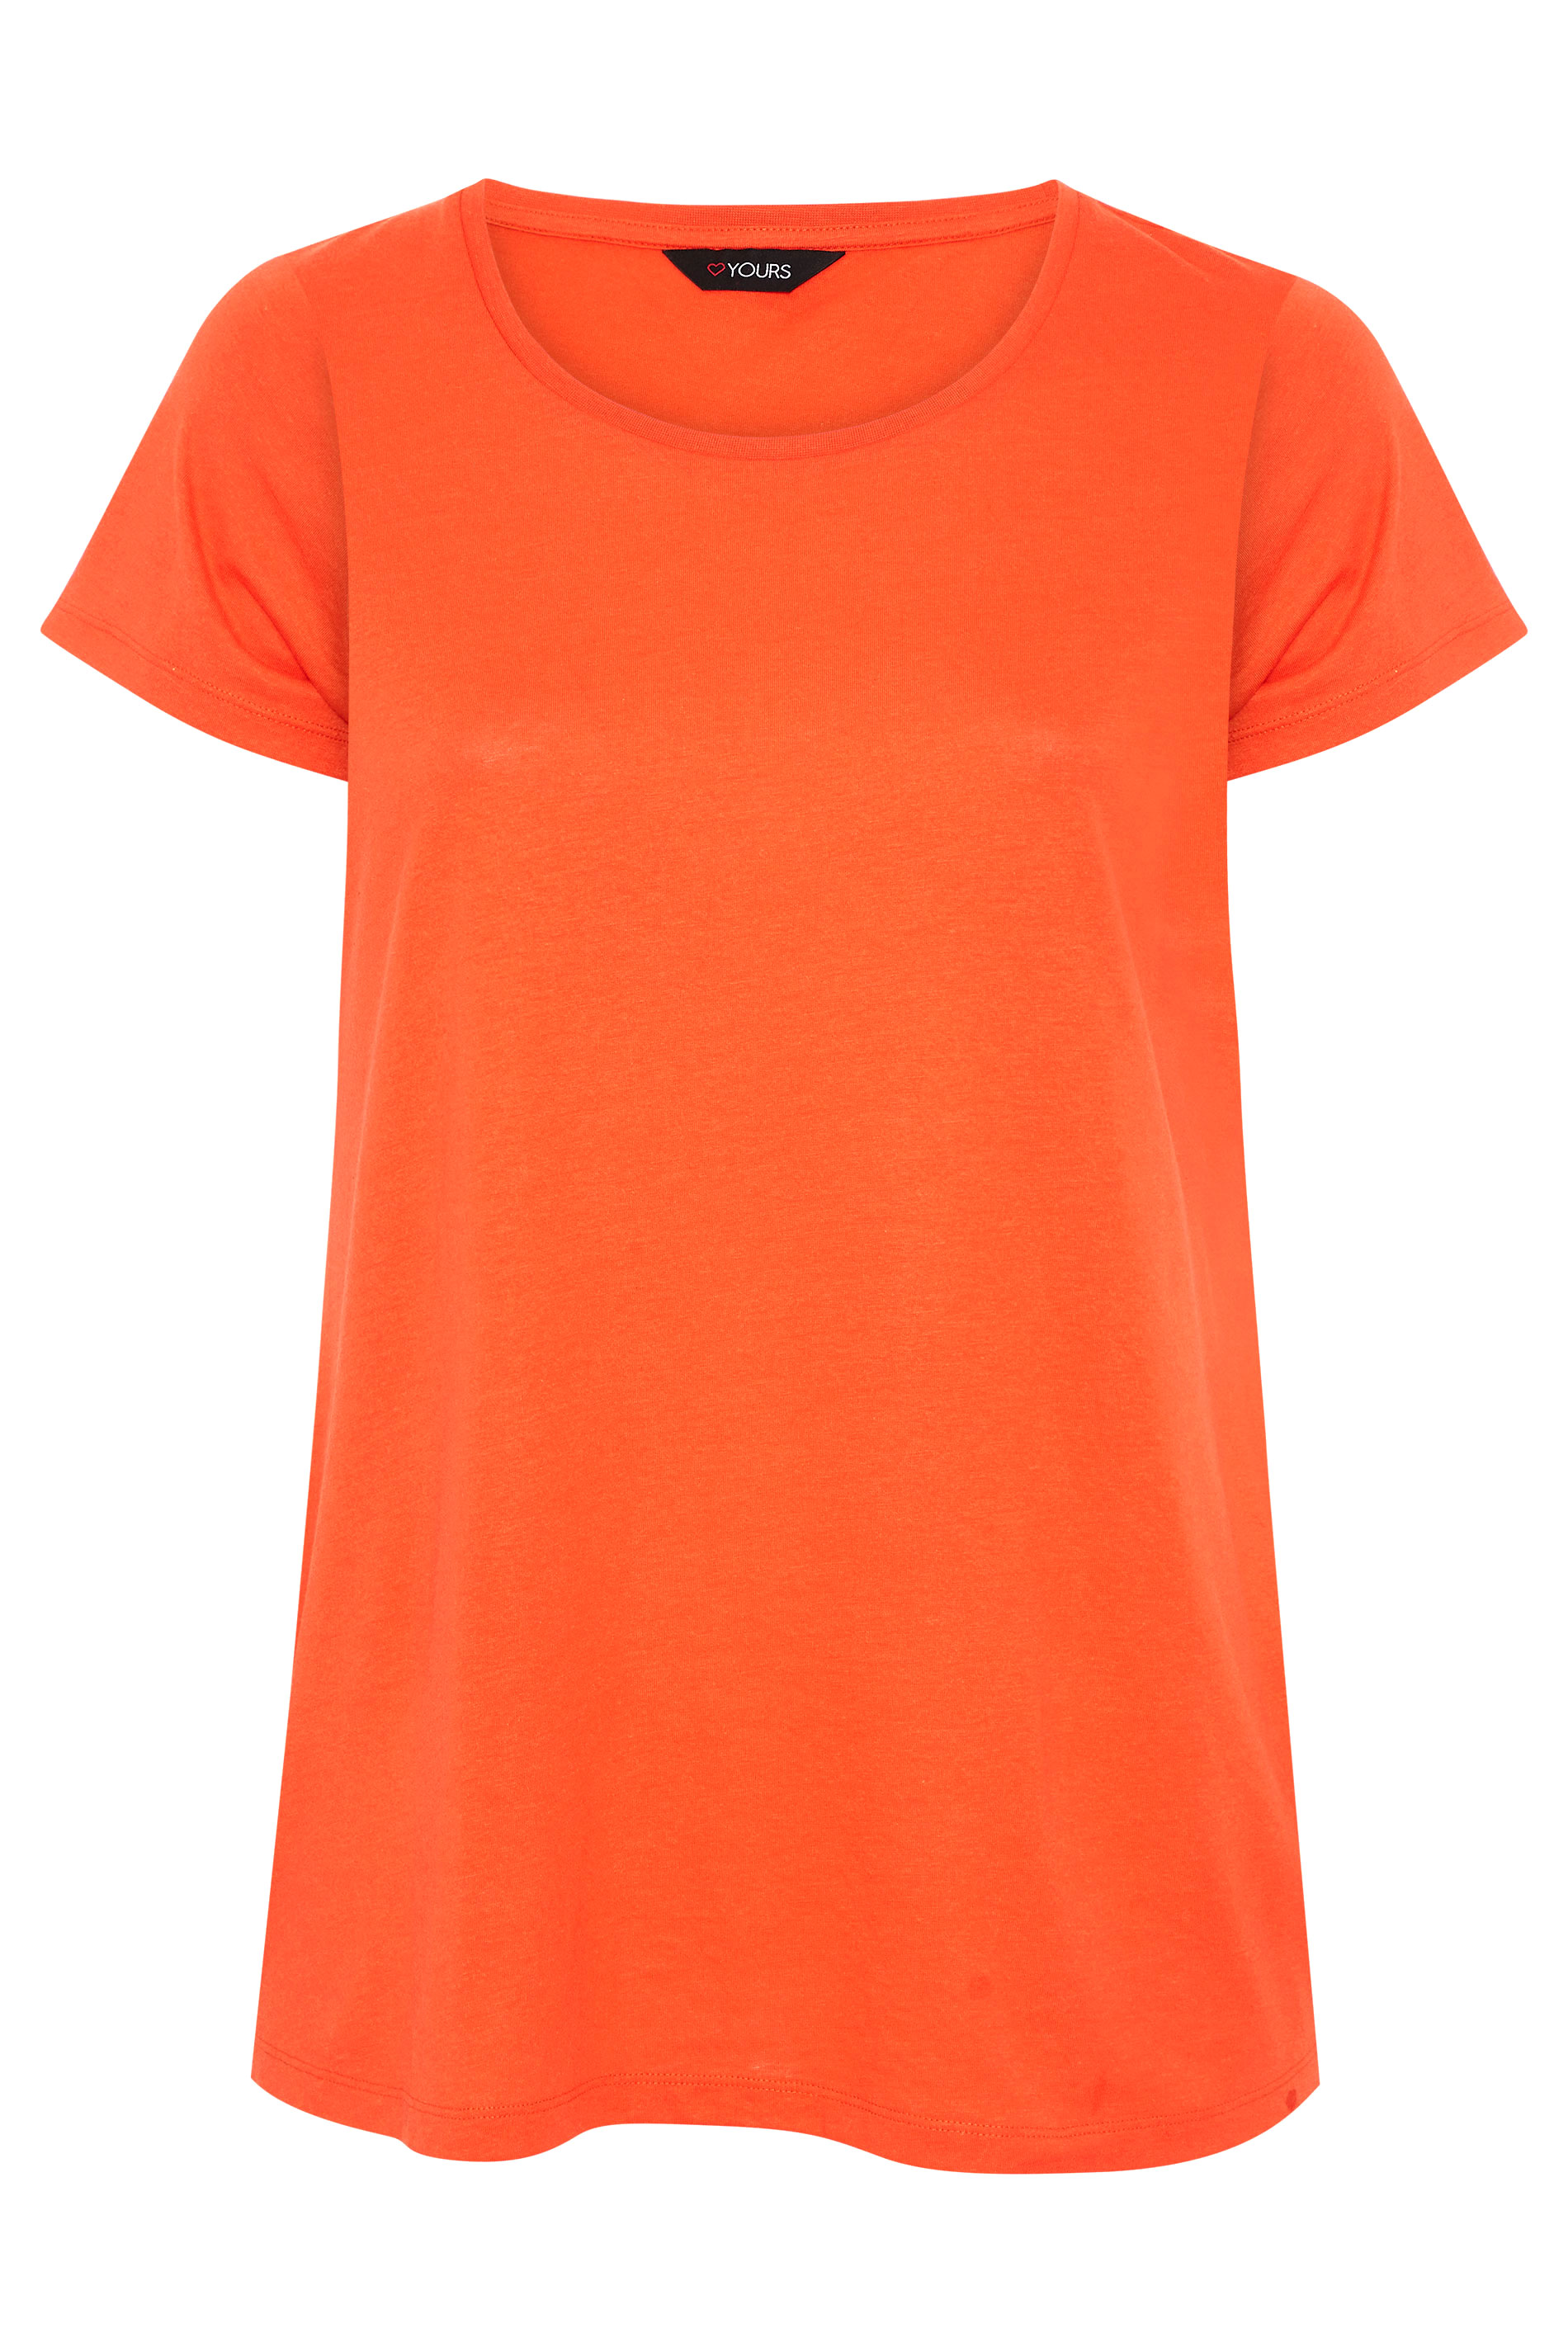 Bright Orange Basic T-Shirt | Yours Clothing